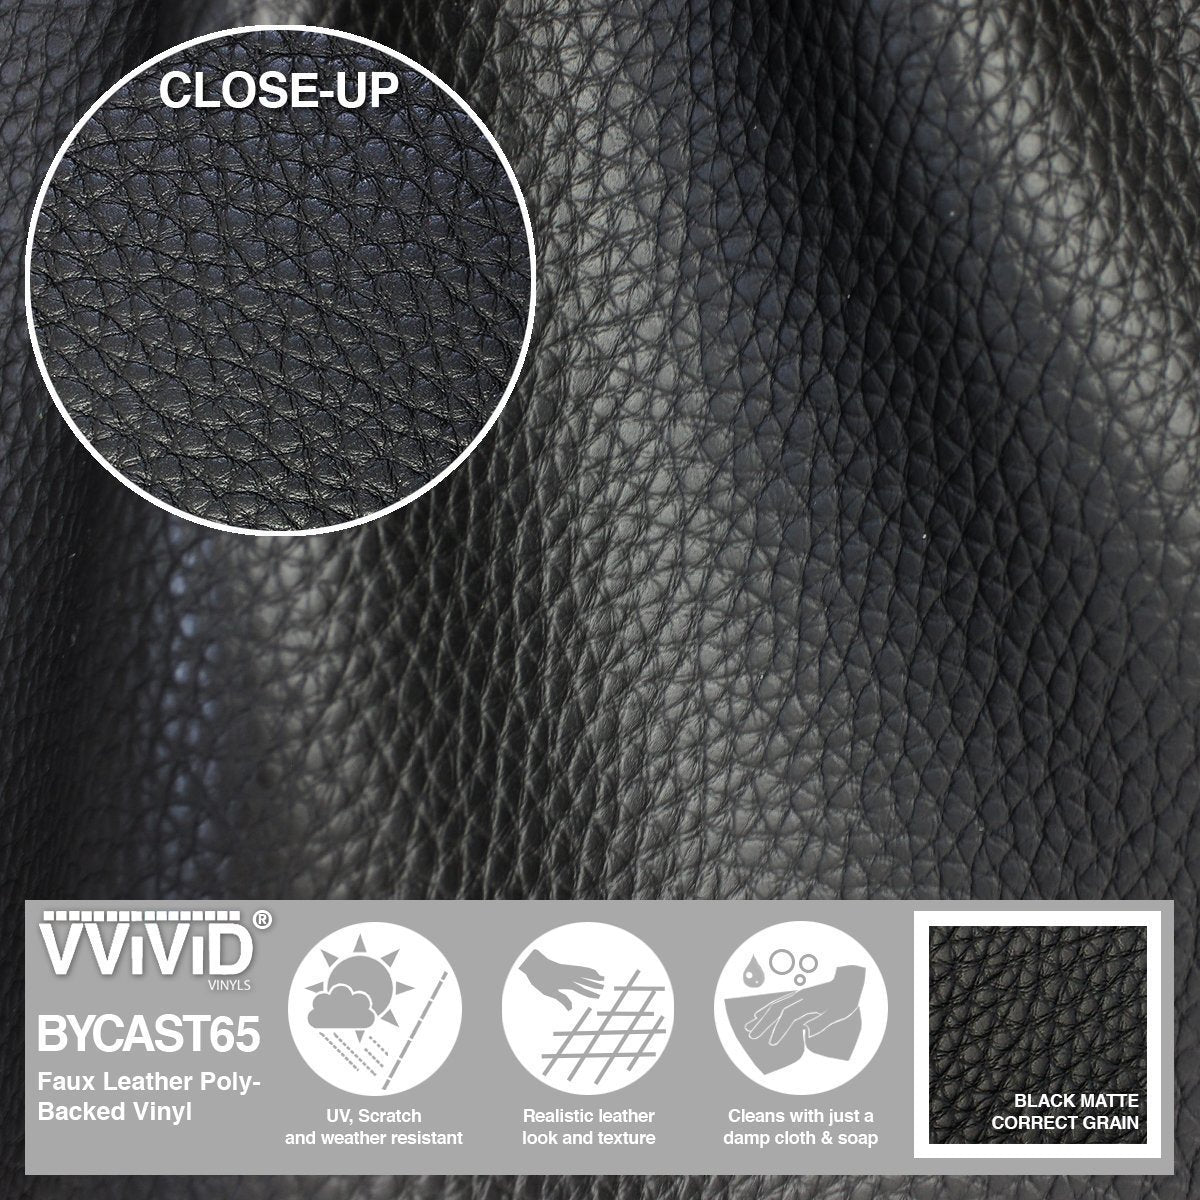 Bycast65 Black Matte Correct-Grain Pattern Faux Leather Marine Vinyl Fabric - The VViViD Vinyl Wrap Shop